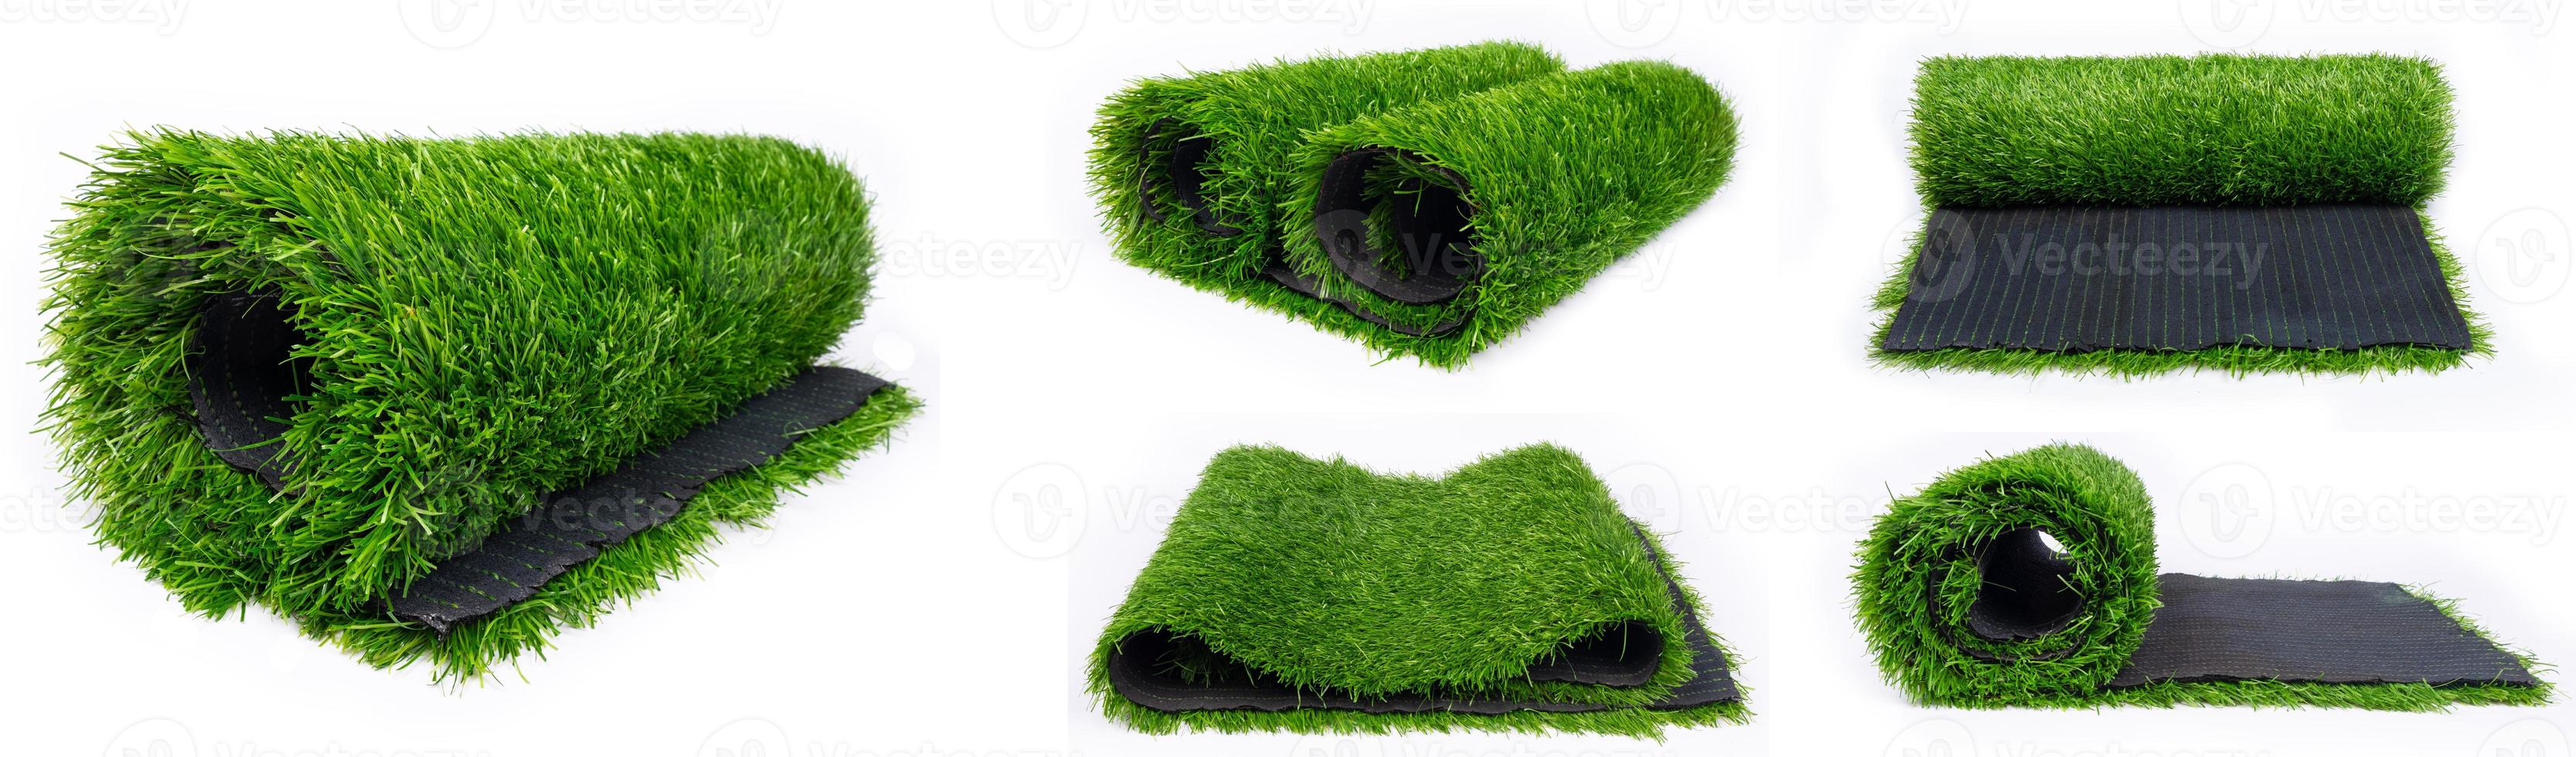 collage av rullar av konstgjord plastgräs för idrottsplaner foto